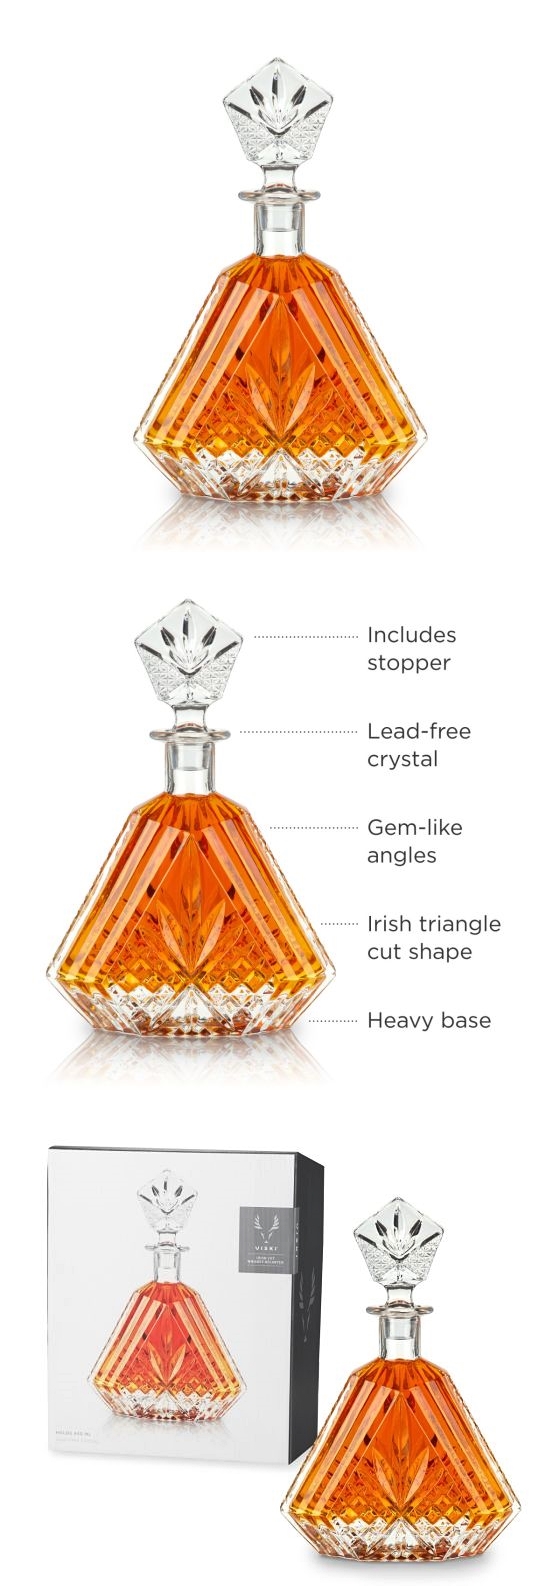 Irish Triangle-Cut 15oz Lead-Free Crystal Whiskey Decanter by VISKI